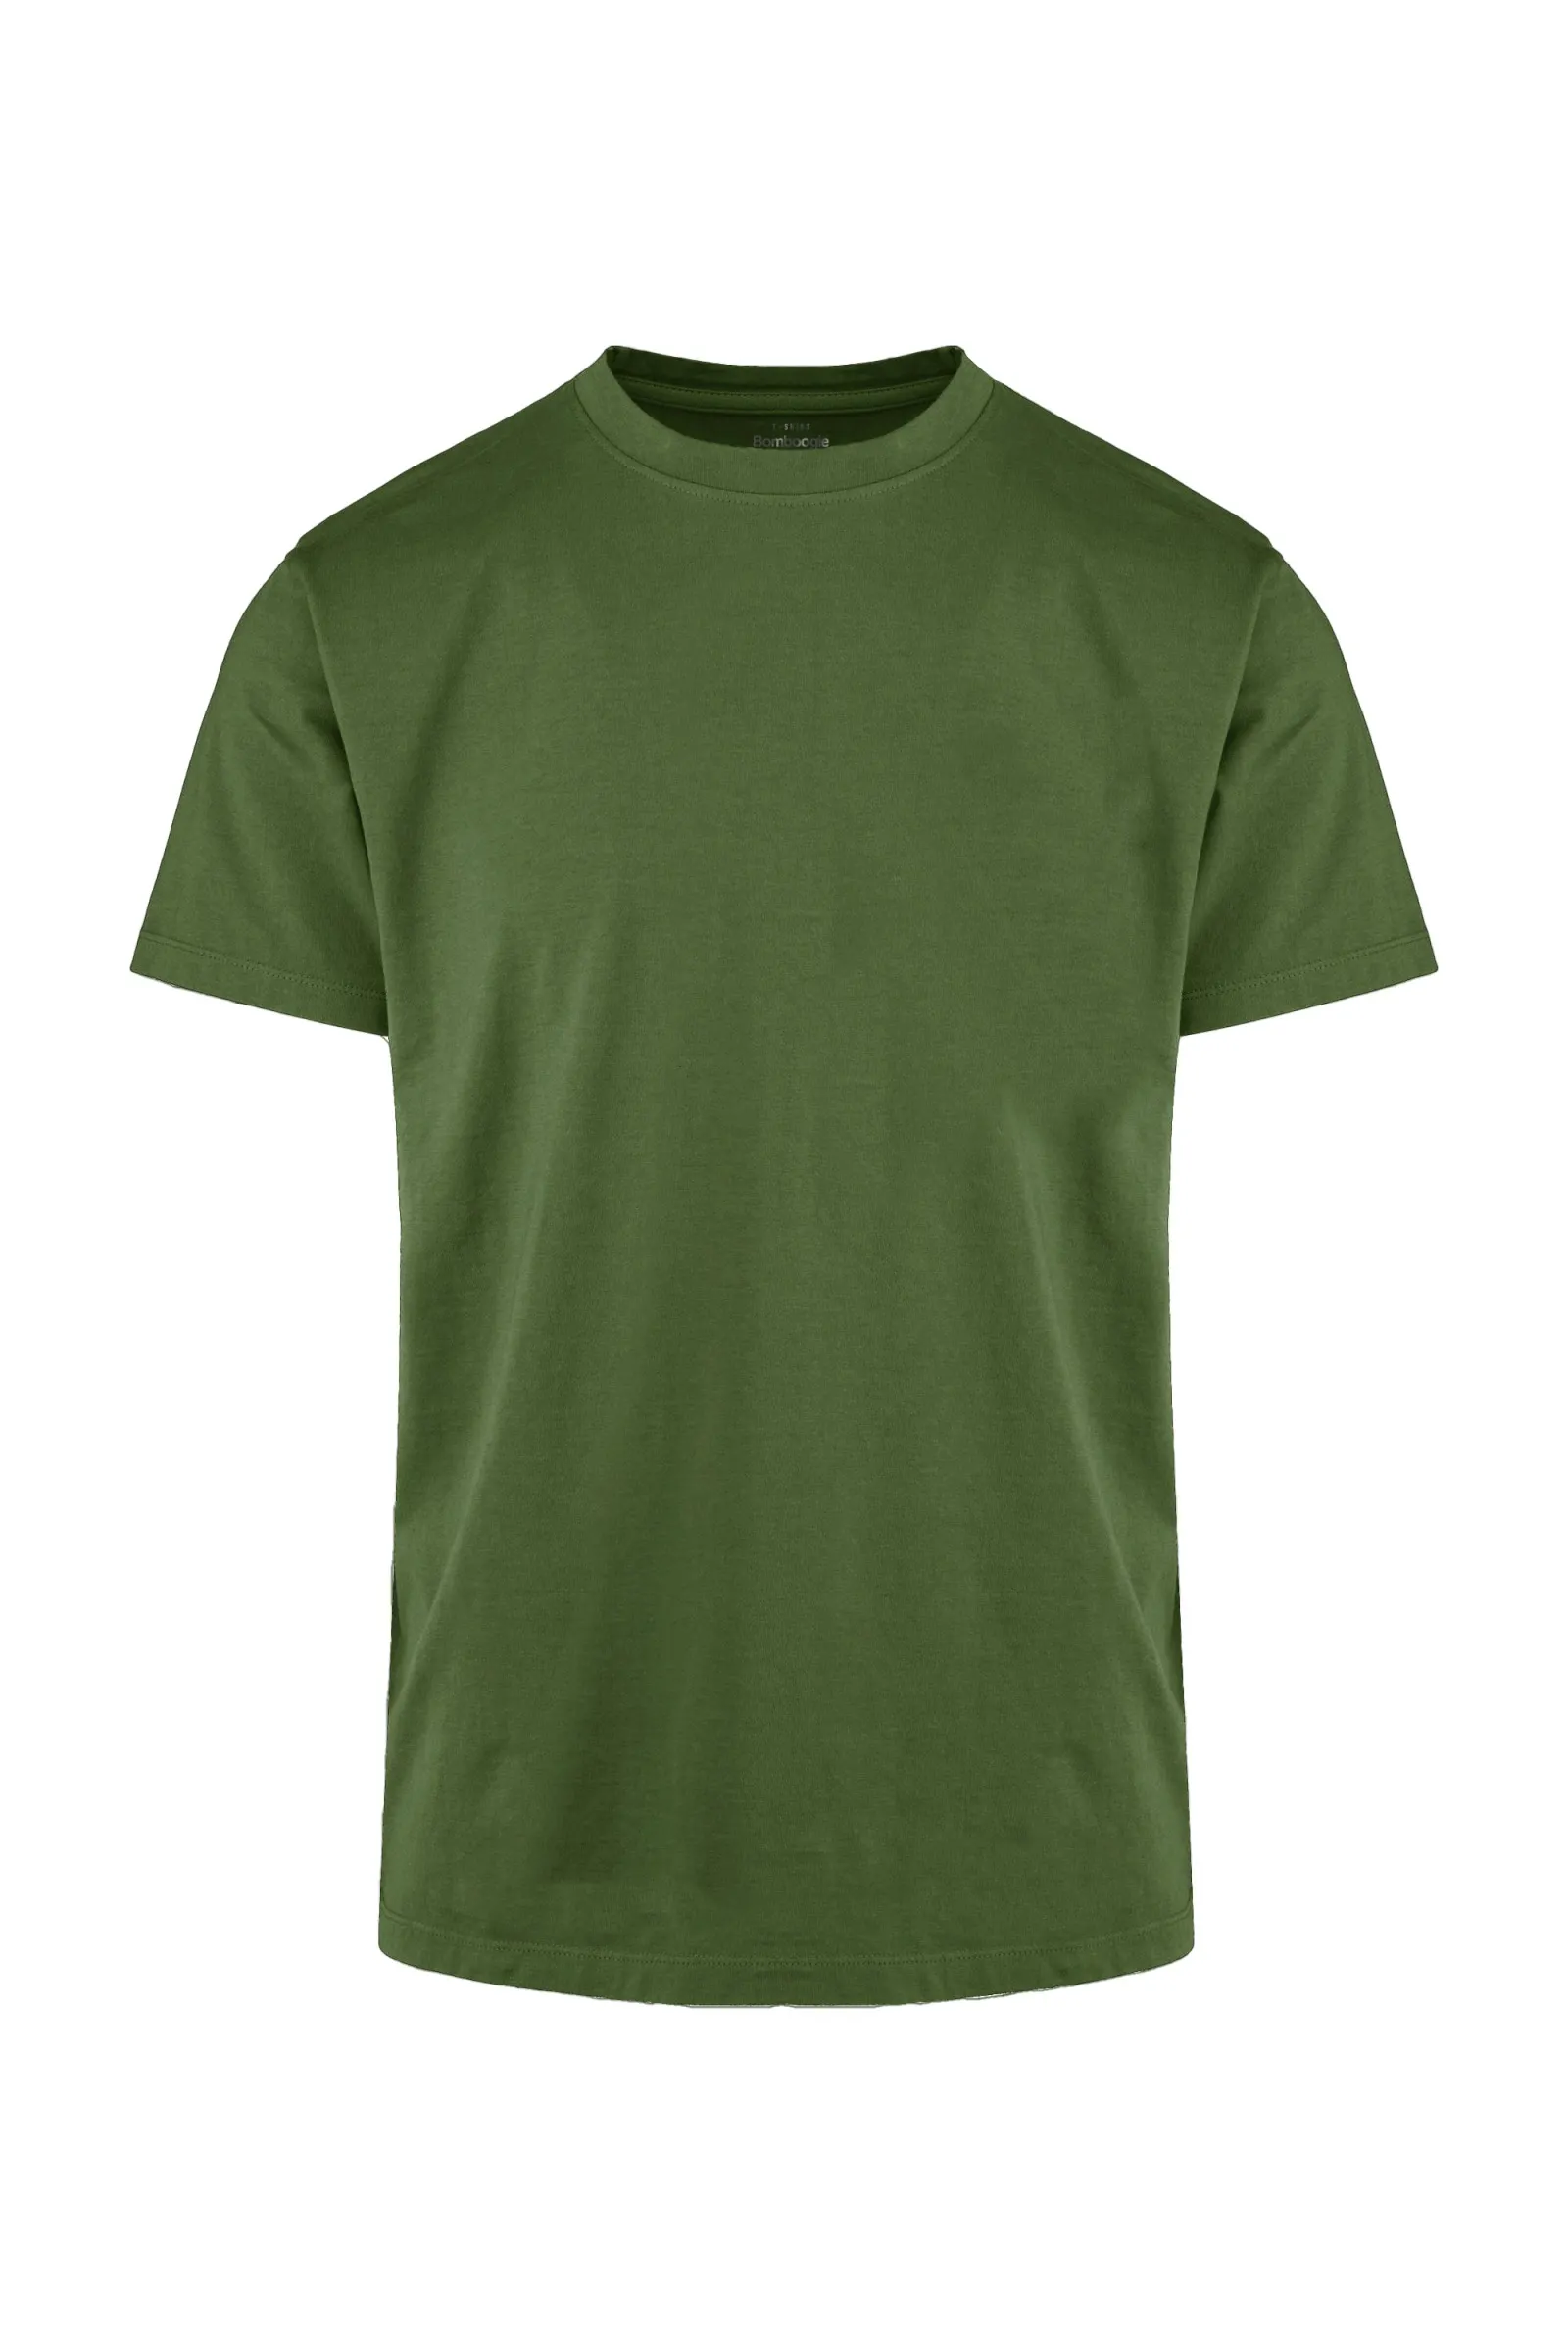 Bomboogie T-shirt girocollo da uomo in cotone fiammato TM7903TJSSG 359 martini olive